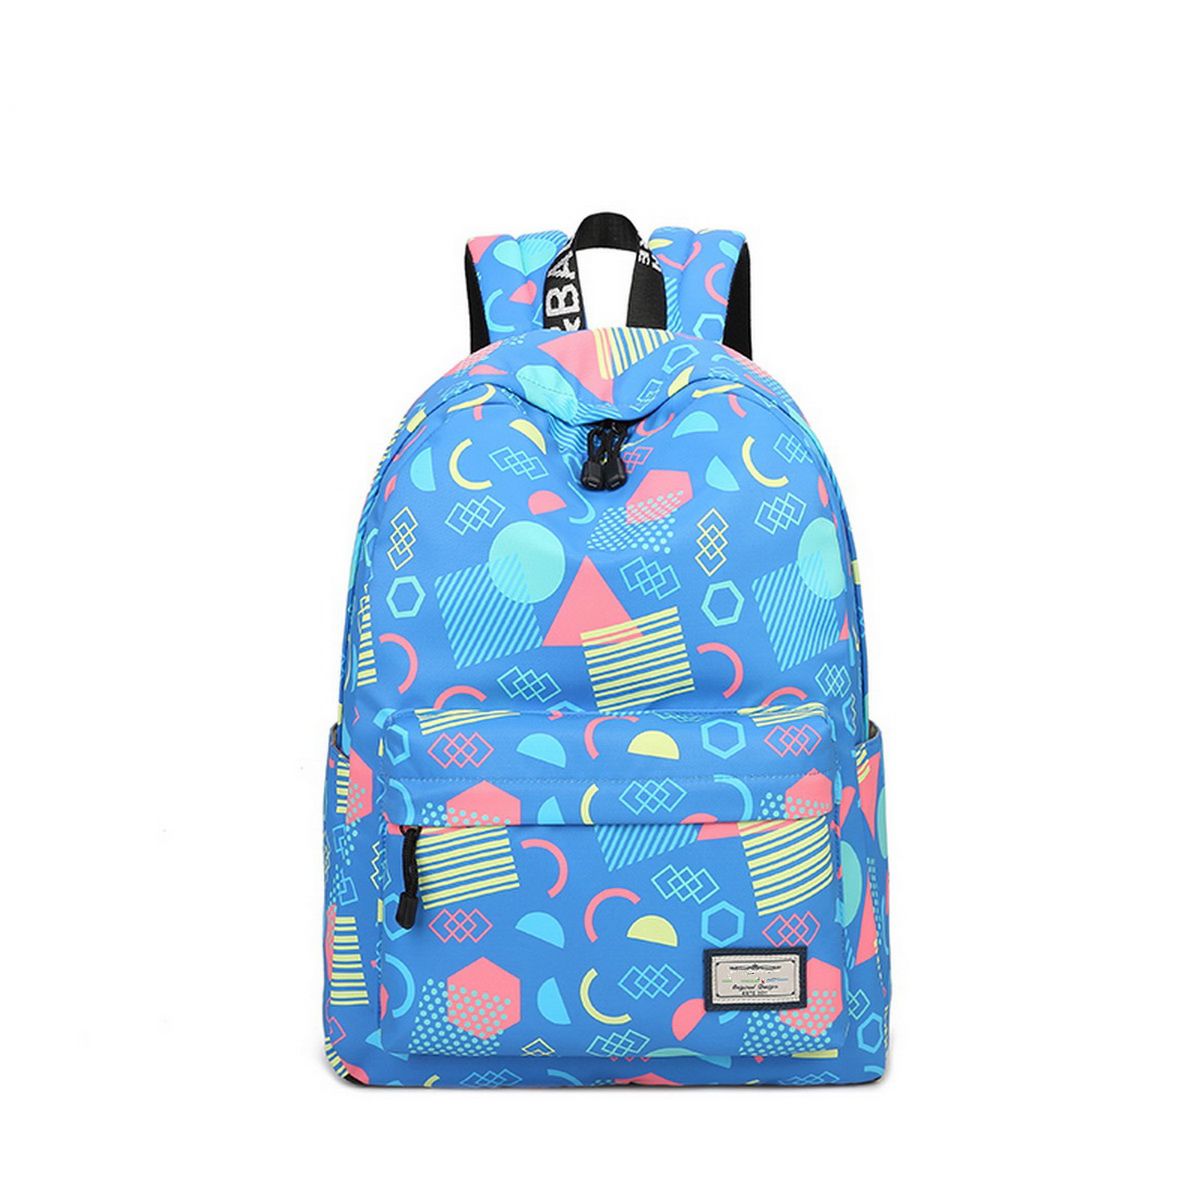 Joymoze Waterproof School Backpack for Girls Middle School Cute Bookbag Daypack for Women Geometry 843